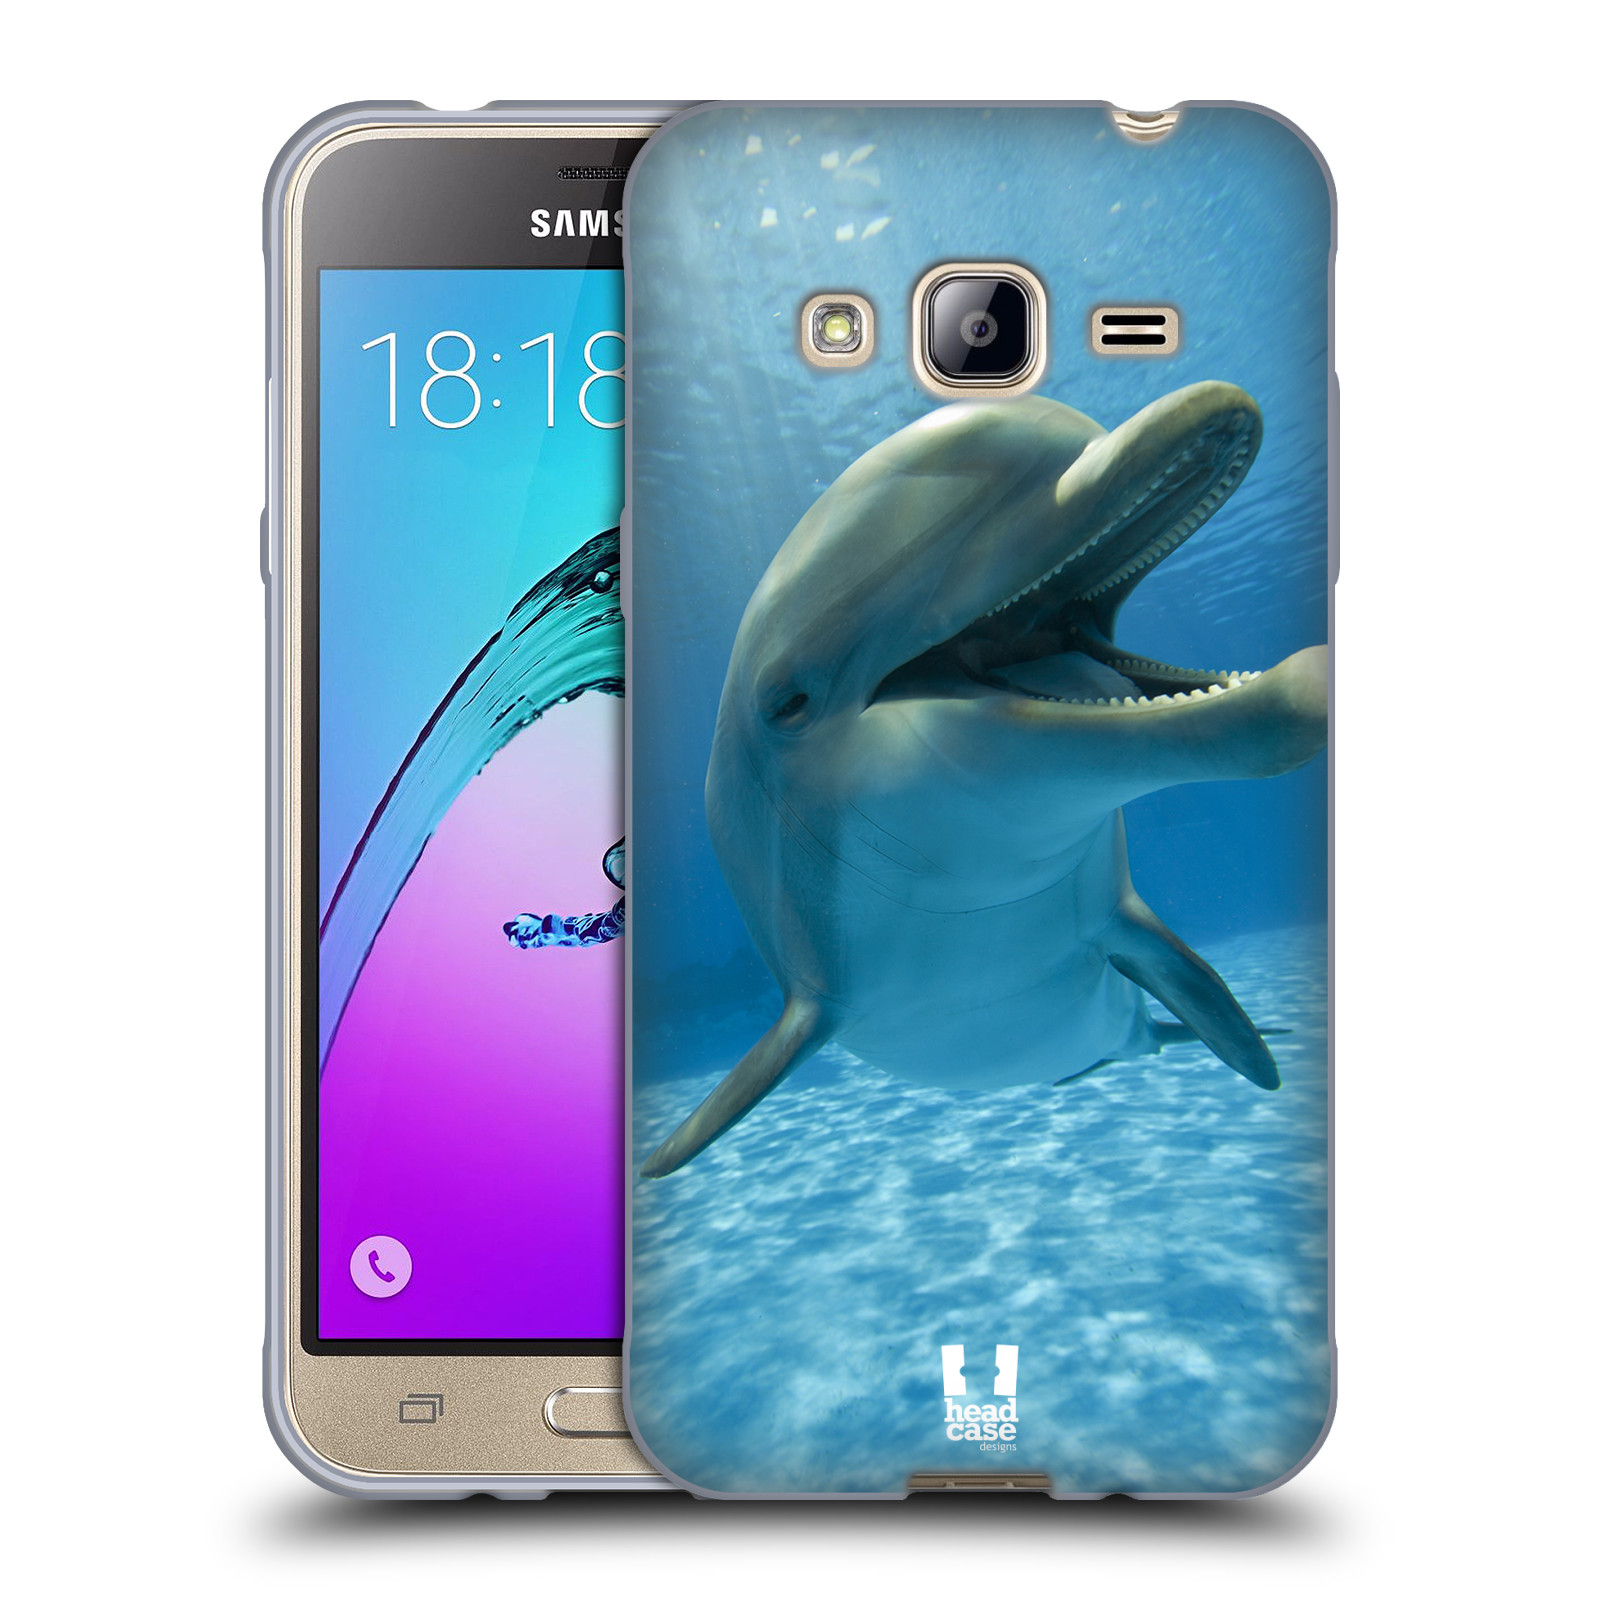 HEAD CASE silikonový obal na mobil Samsung Galaxy J3, J3 2016 vzor Divočina, Divoký život a zvířata foto MODRÁ DELFÍN